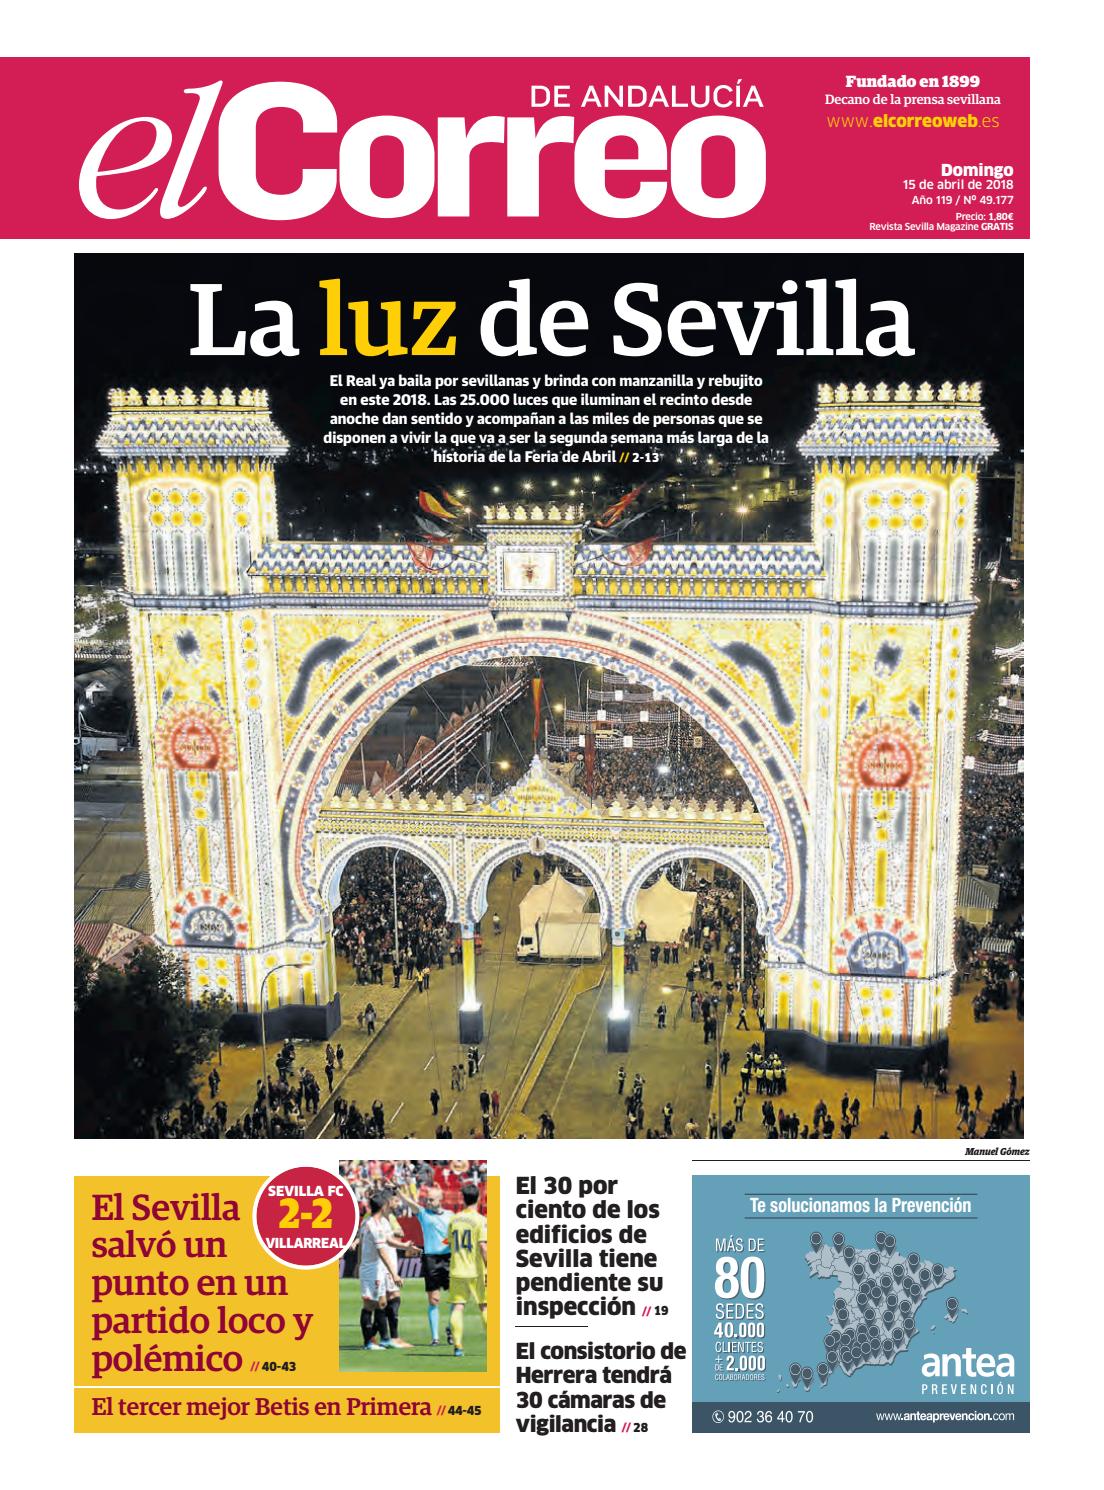 Ligar Sevilla Gratis Metro 211625